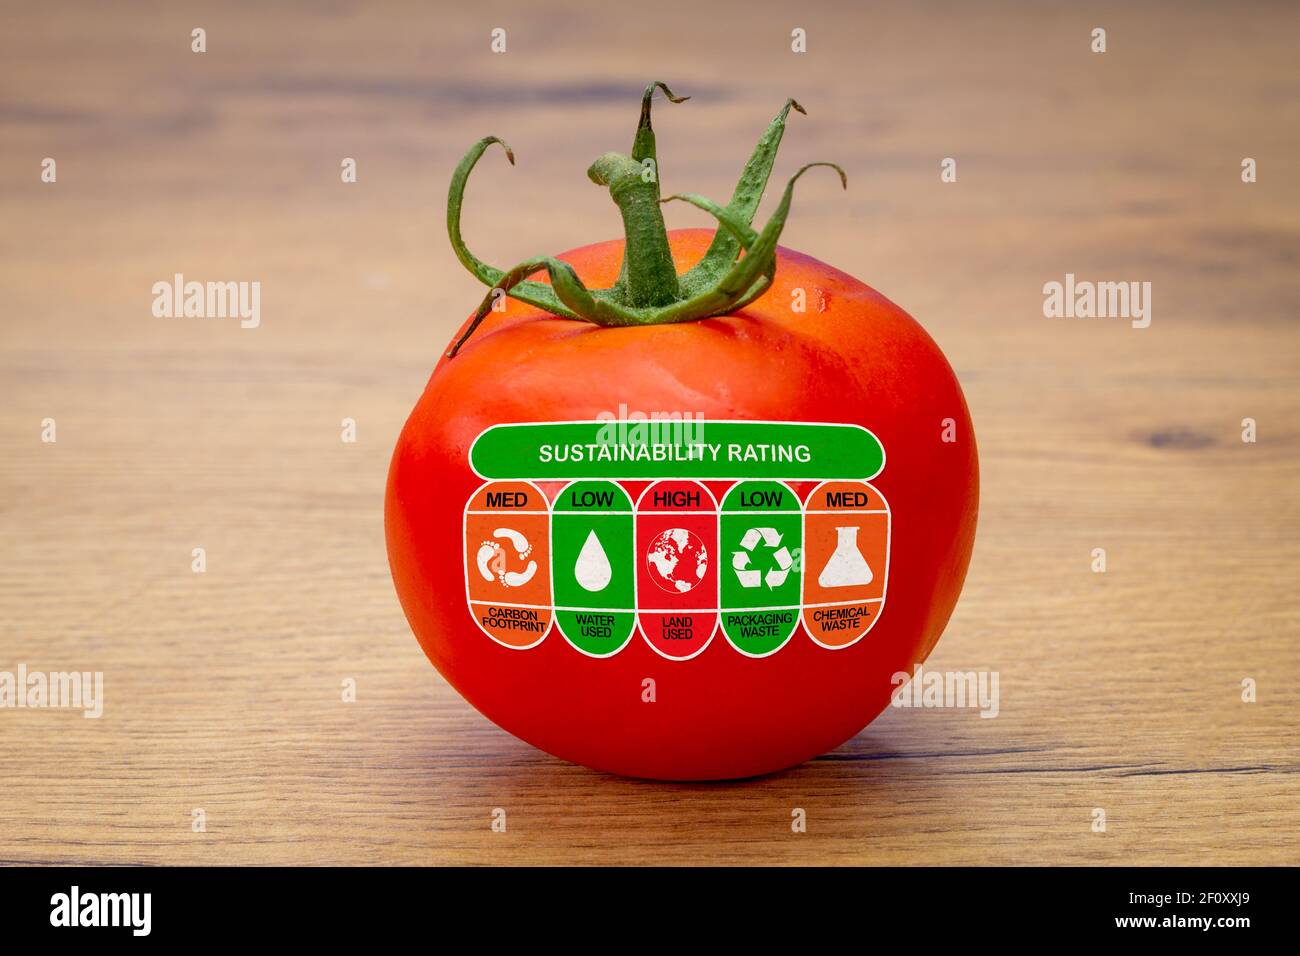 Label de durabilité sur la tomate avec des cotes élevées, faibles et faibles pour l'empreinte carbone des aliments, l'utilisation de l'eau, l'utilisation du sol, les déchets d'emballage et la wast chimique Banque D'Images